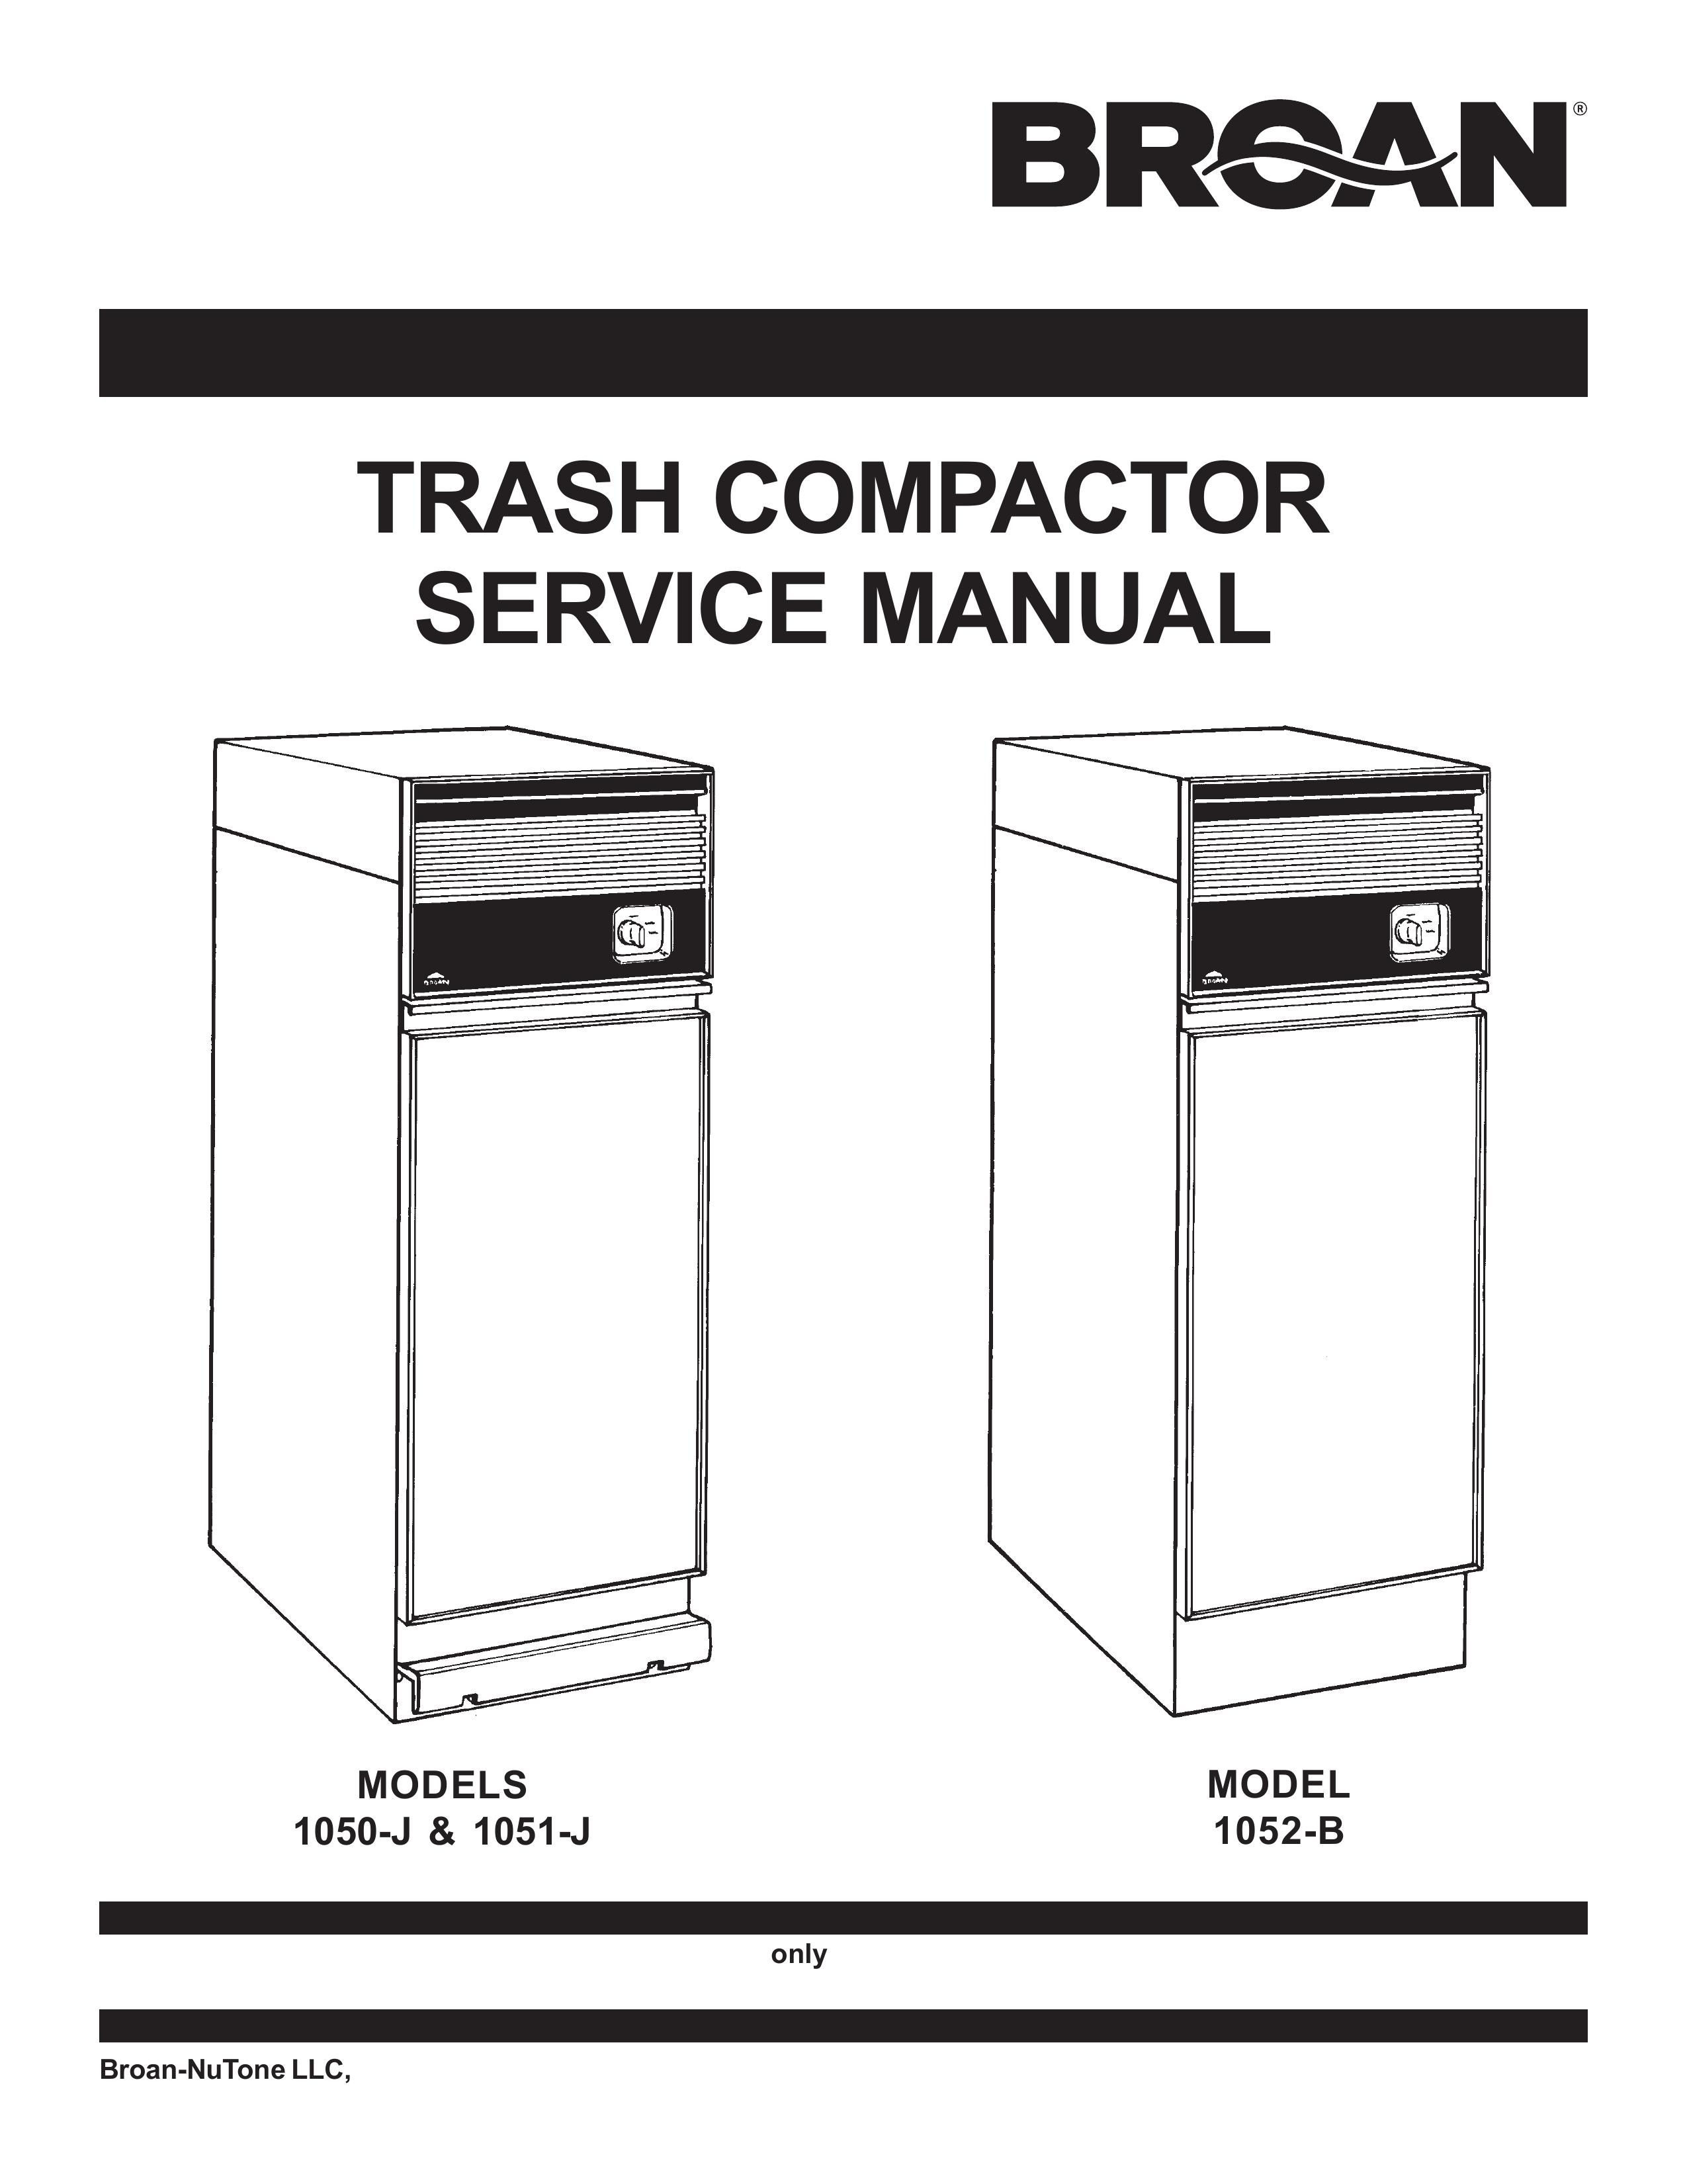 Broan 1051-J Trash Compactor User Manual